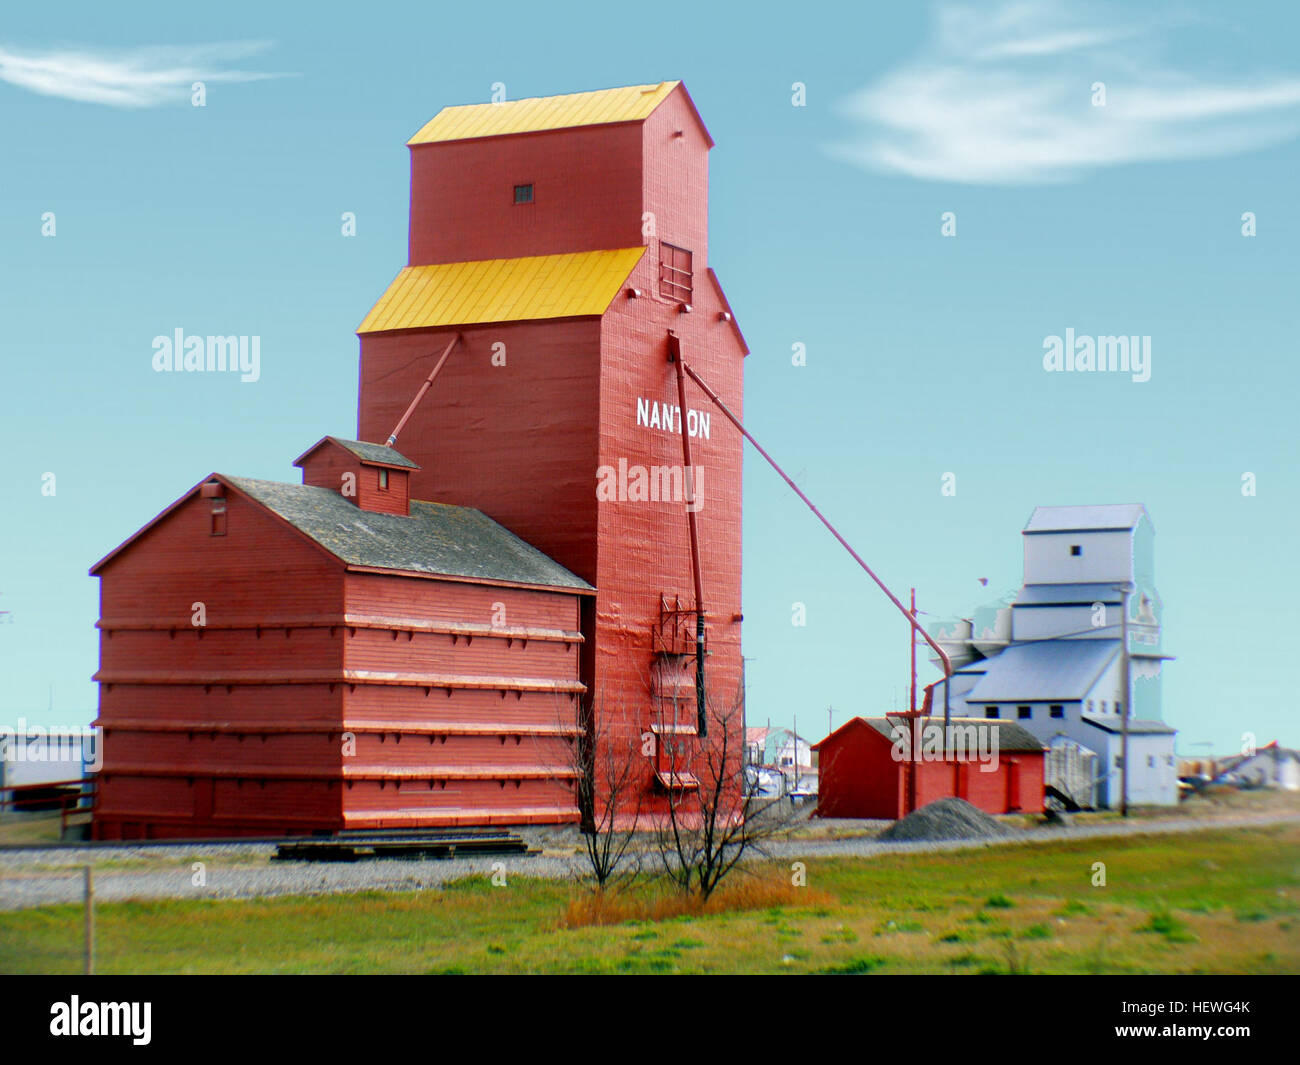 Die kanadischen Grain Elevator Discovery Centre ist ein Satz von restaurierten Getreidespeicher befindet sich in Nanton, Alberta, Kanada. Das Zentrum soll Beispiele des alten Getreidesilos, Besucher über die Stadt und Alberta, agrarhistorische erziehen zu bewahren. Stockfoto